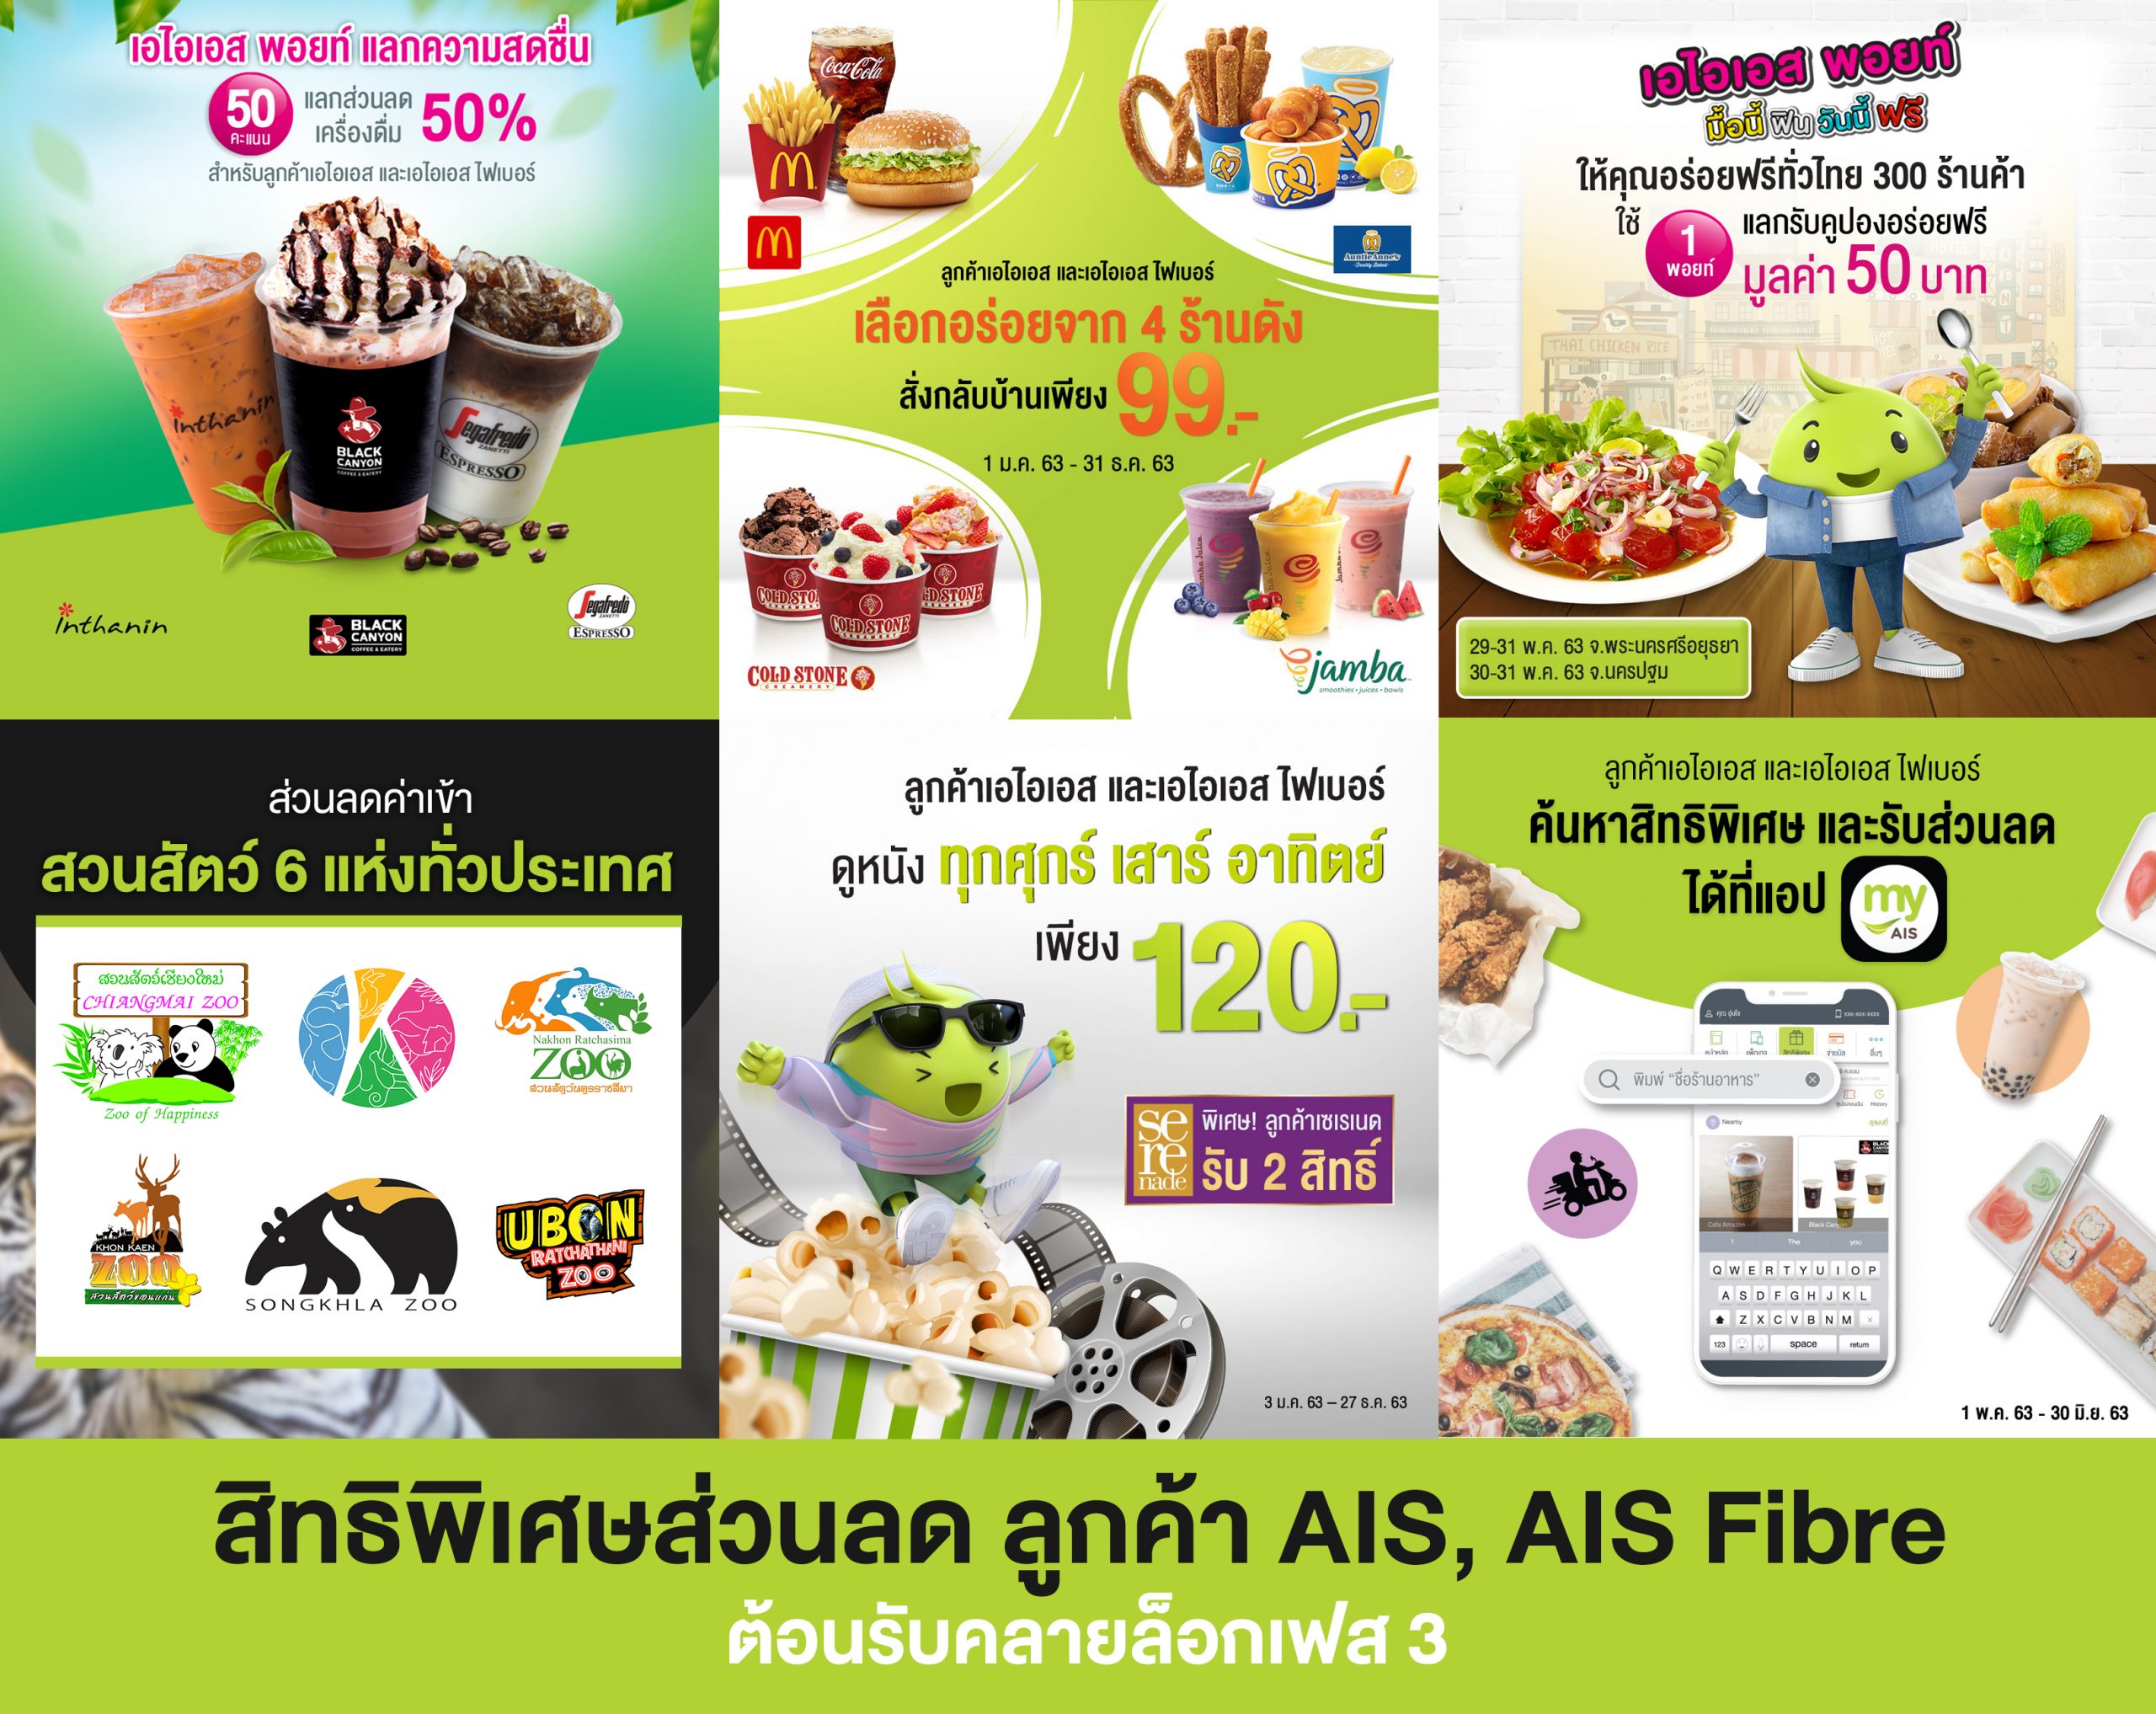 ต้อนรับคลายล็อกเฟส 3 . AIS ยกขบวนสิทธิพิเศษส่วนลดครบทุกไลฟ์สไตล์ ทั่วไทย